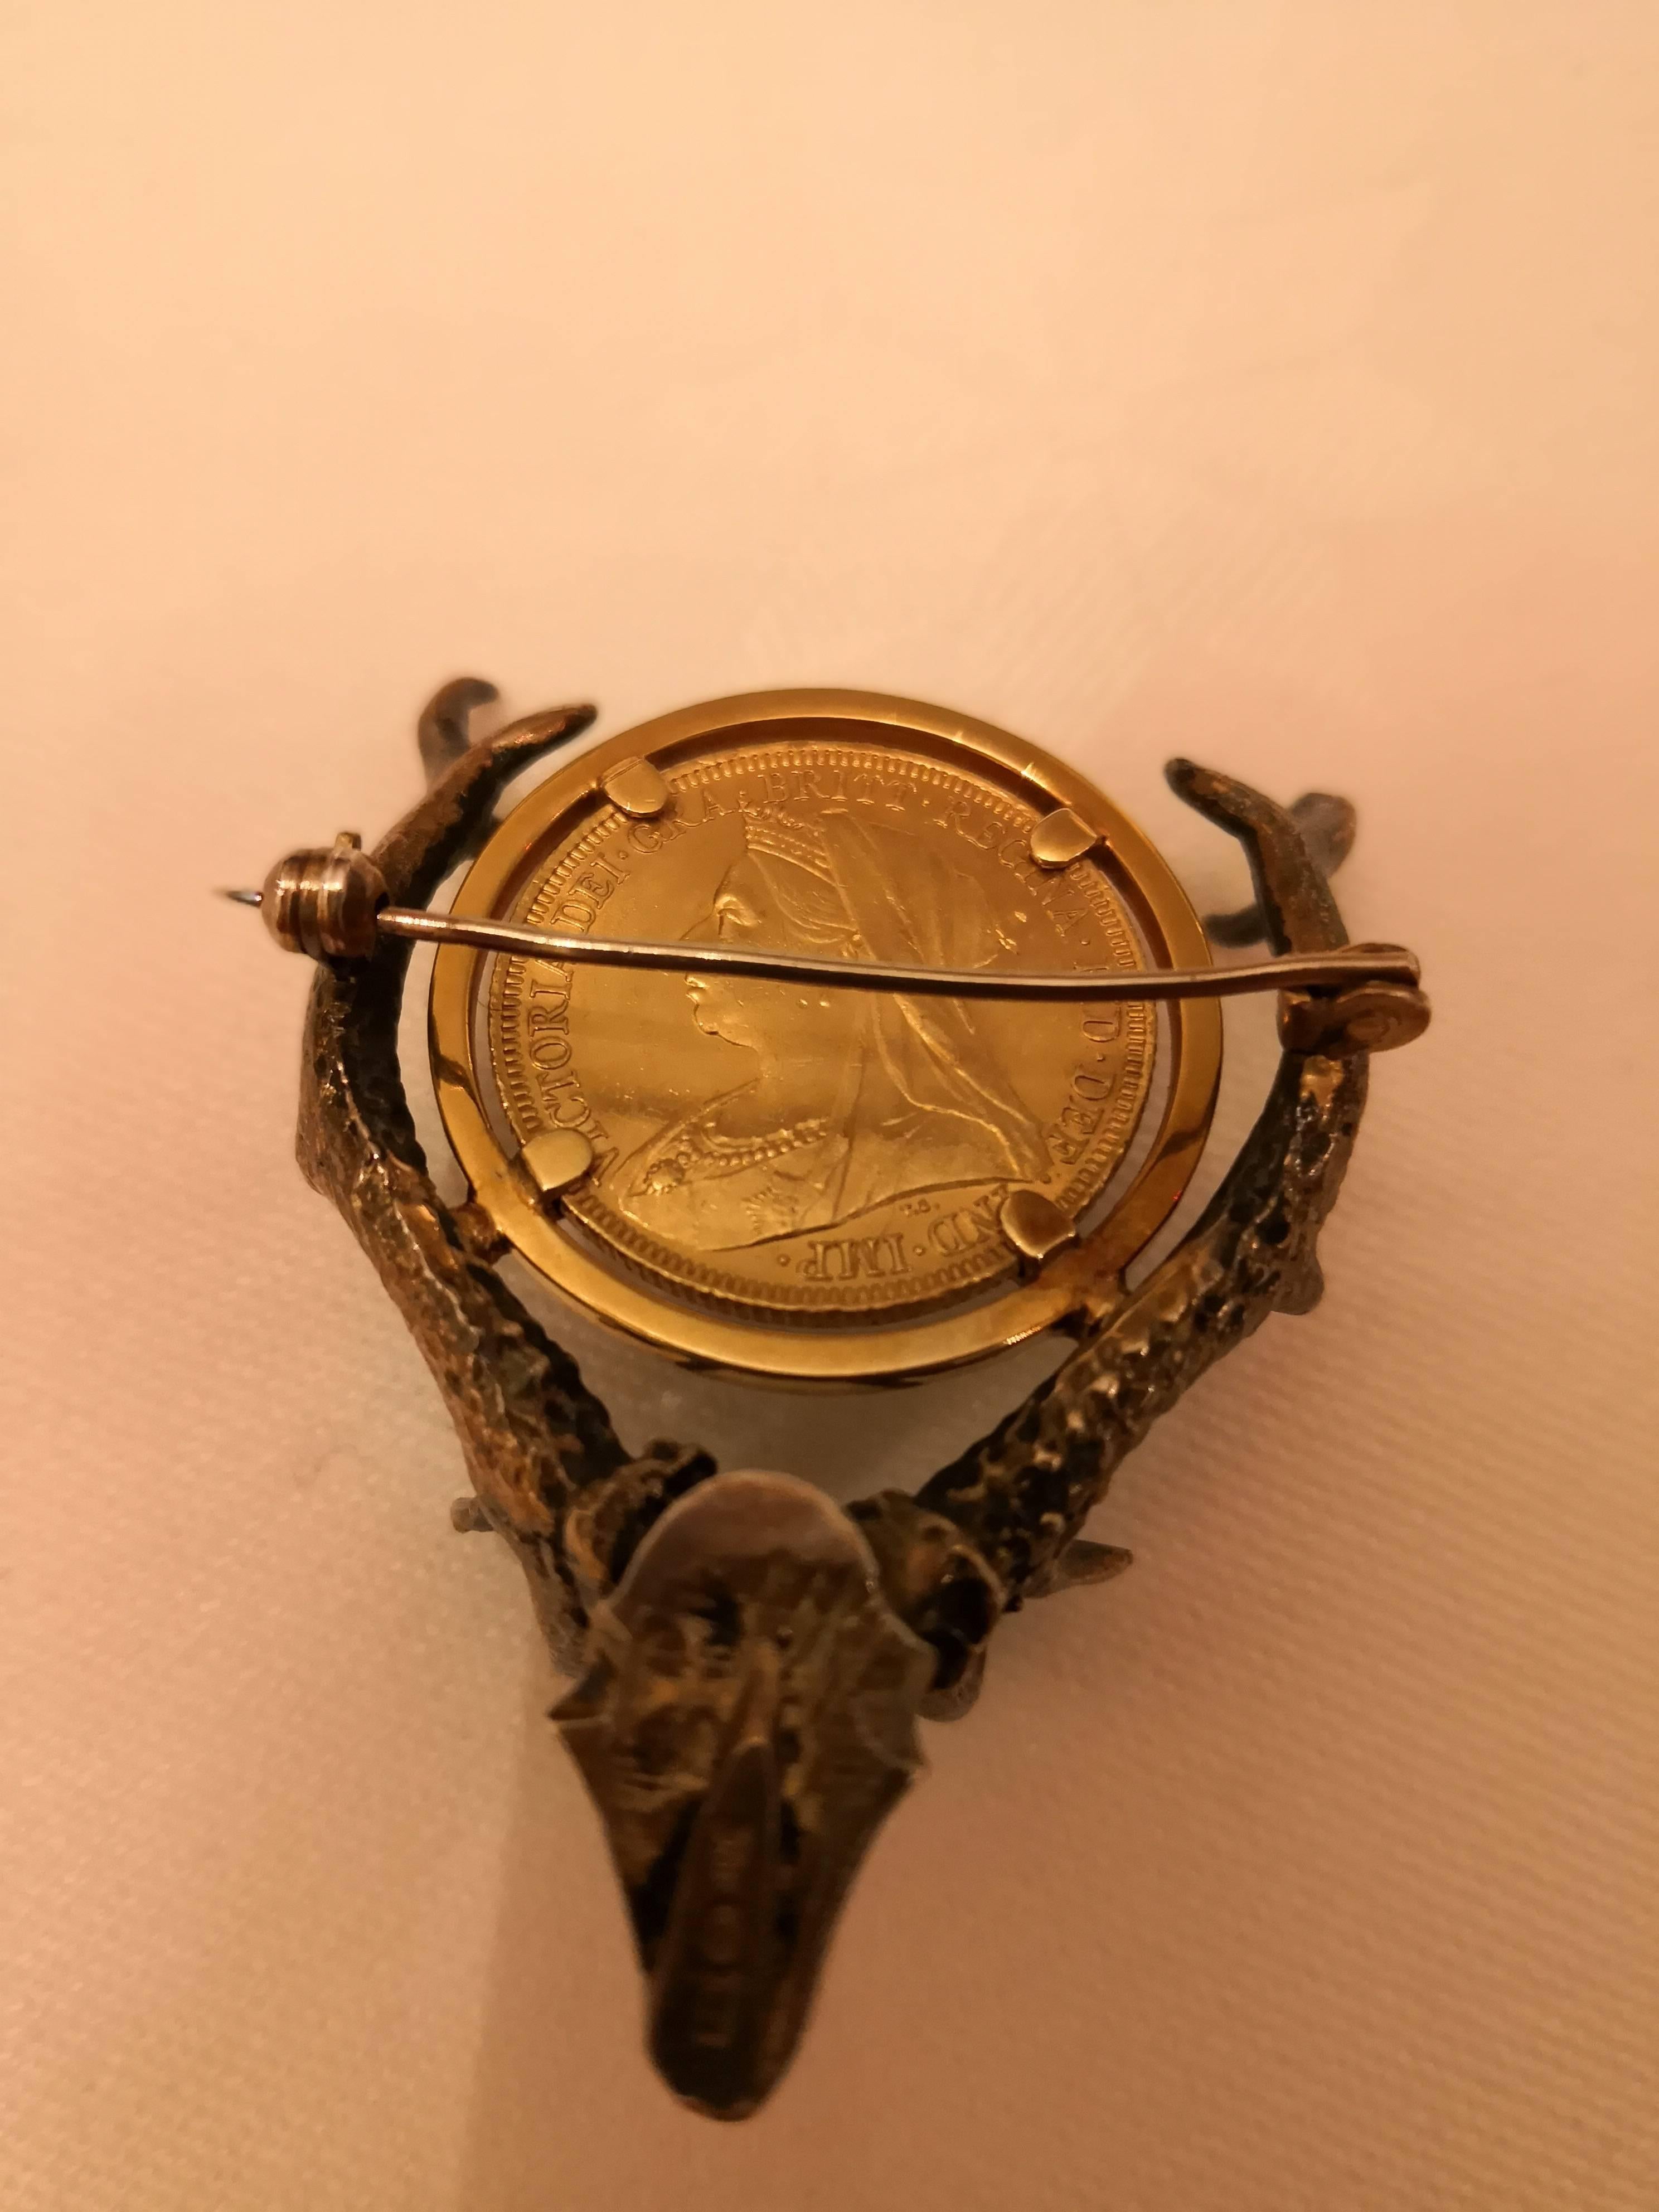 Handgefertigte Brosche in Form eines Geweihs in Silber vergoldet. In der Mitte eine viktorianische Goldmedaille von 1895. Österreichische Punze und Silberpunze.